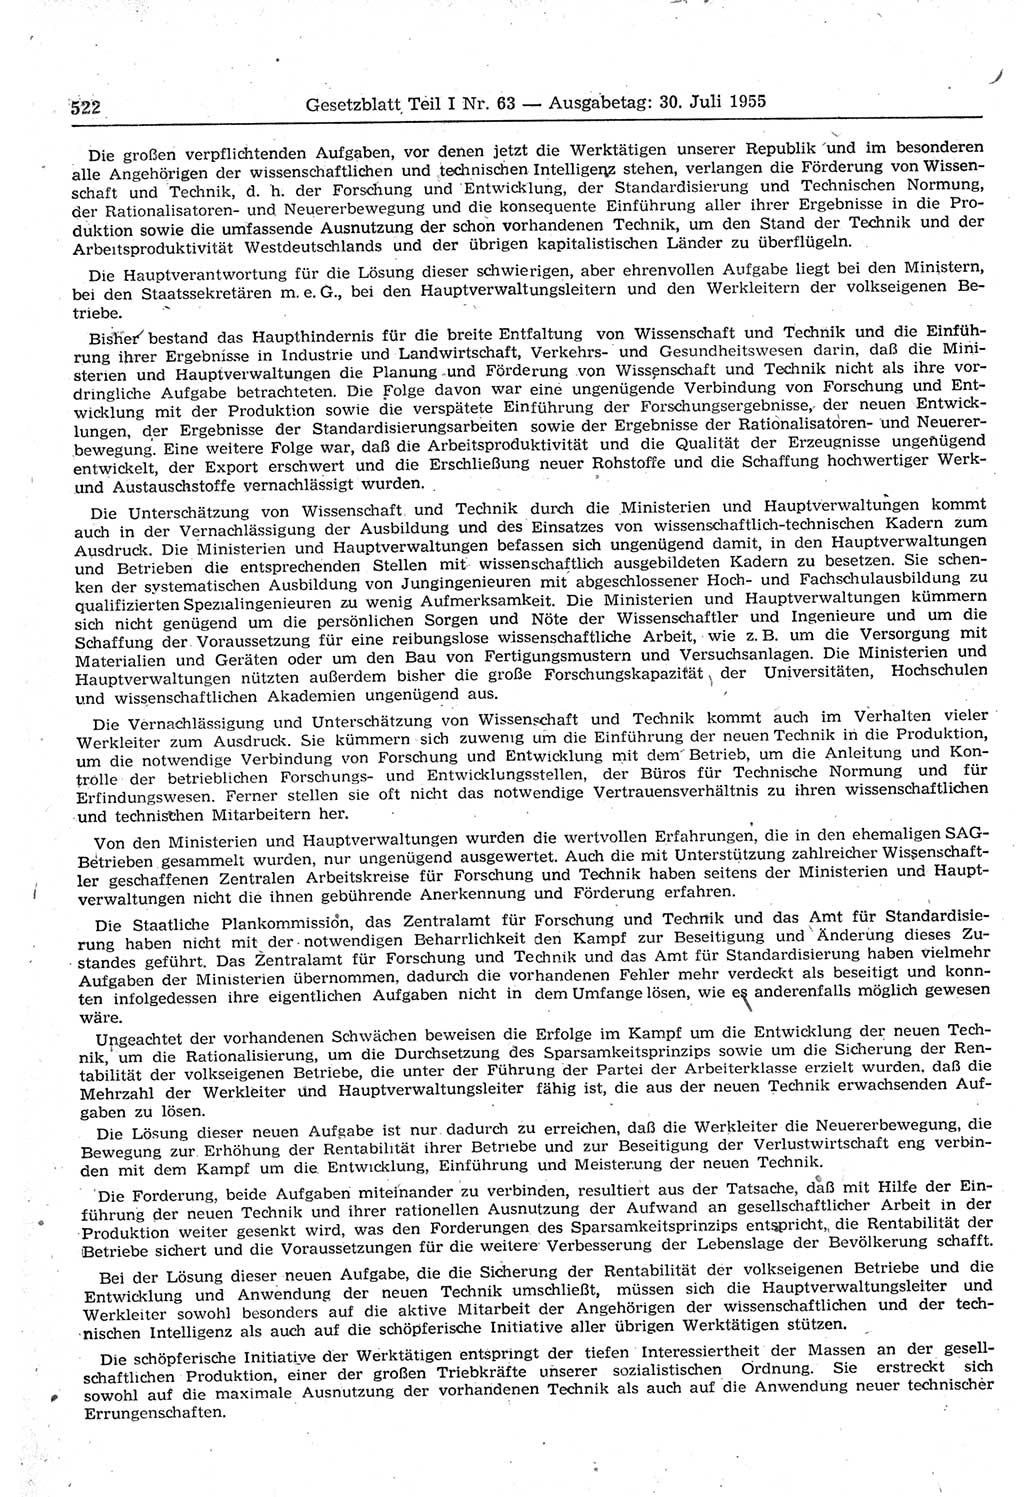 Gesetzblatt (GBl.) der Deutschen Demokratischen Republik (DDR) Teil Ⅰ 1955, Seite 522 (GBl. DDR Ⅰ 1955, S. 522)